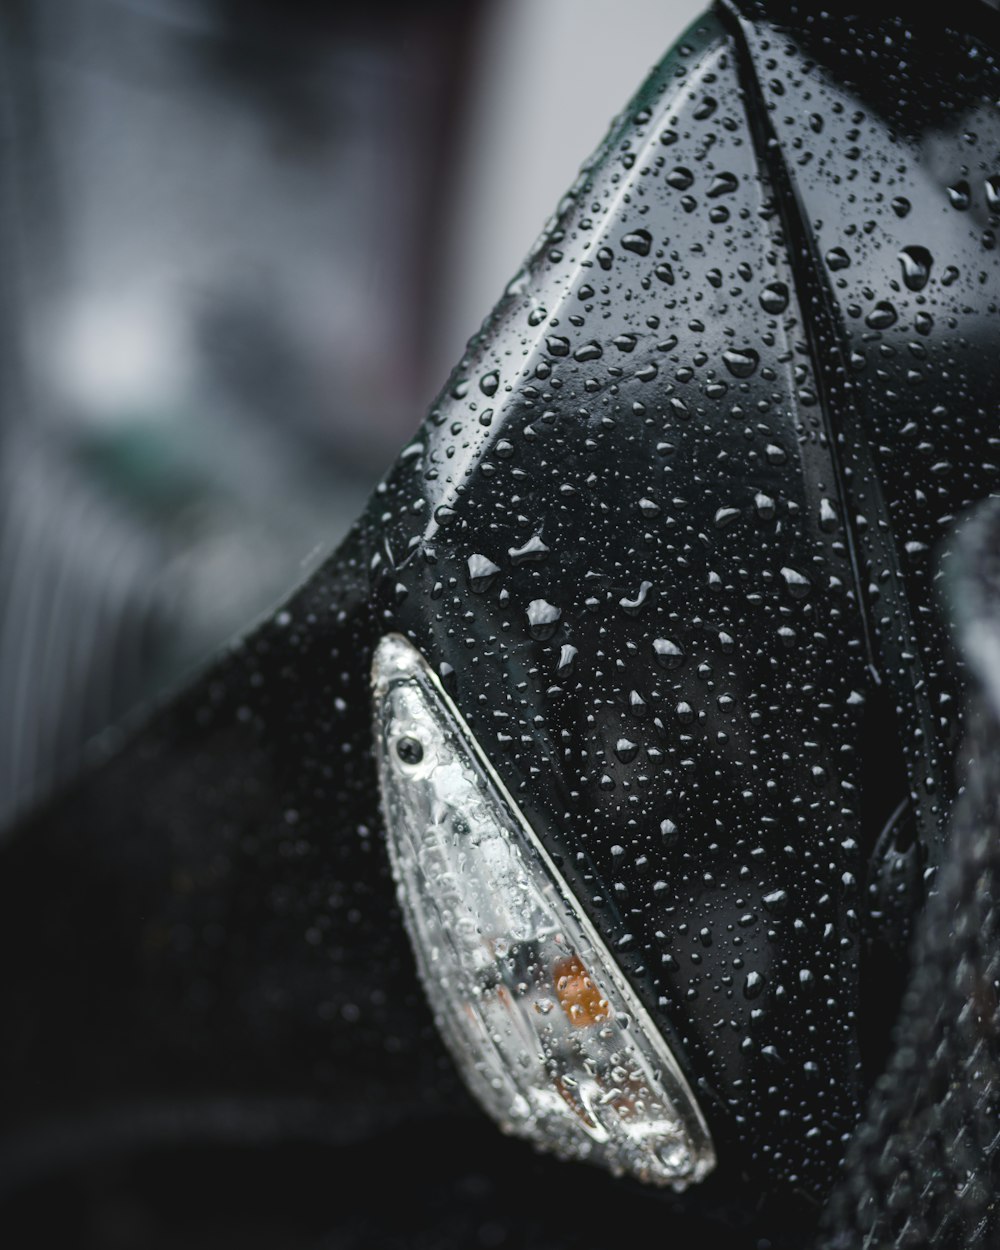 a close up of a rain covered umbrella